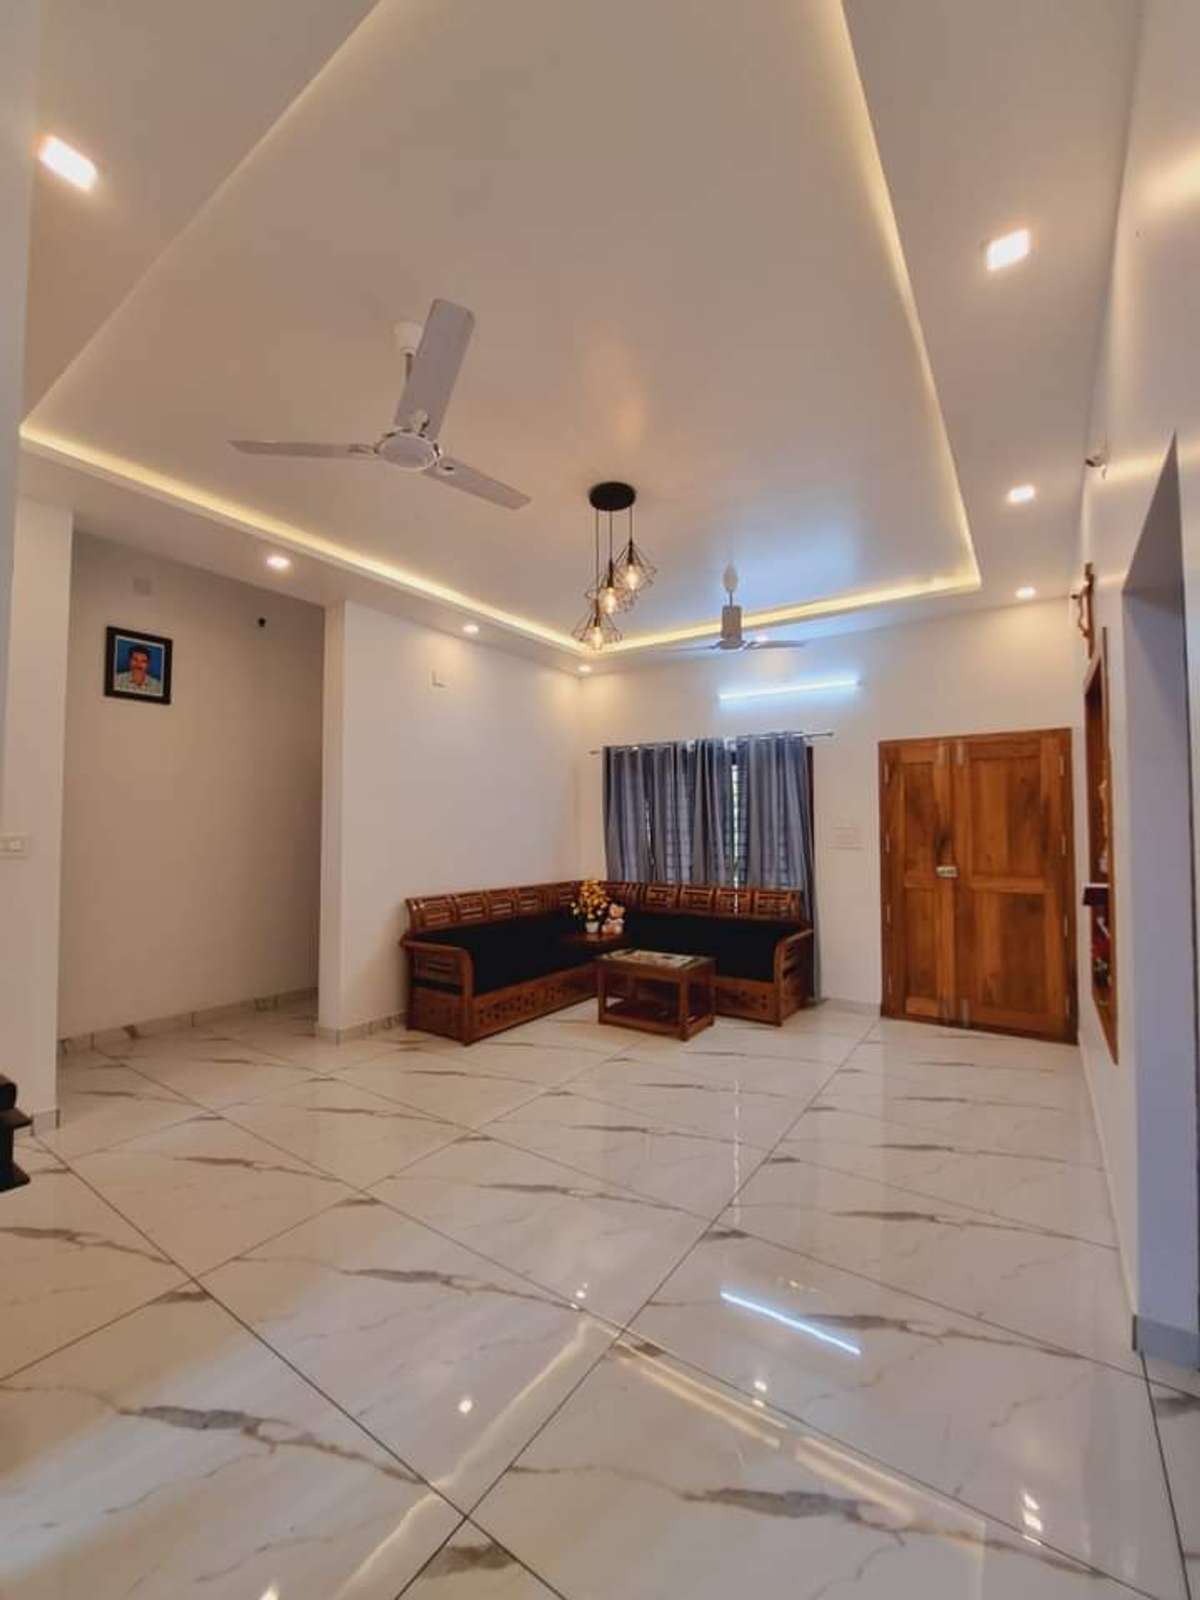 Ceiling, Lighting Designs by Contractor vishnu V V, Thrissur | Kolo